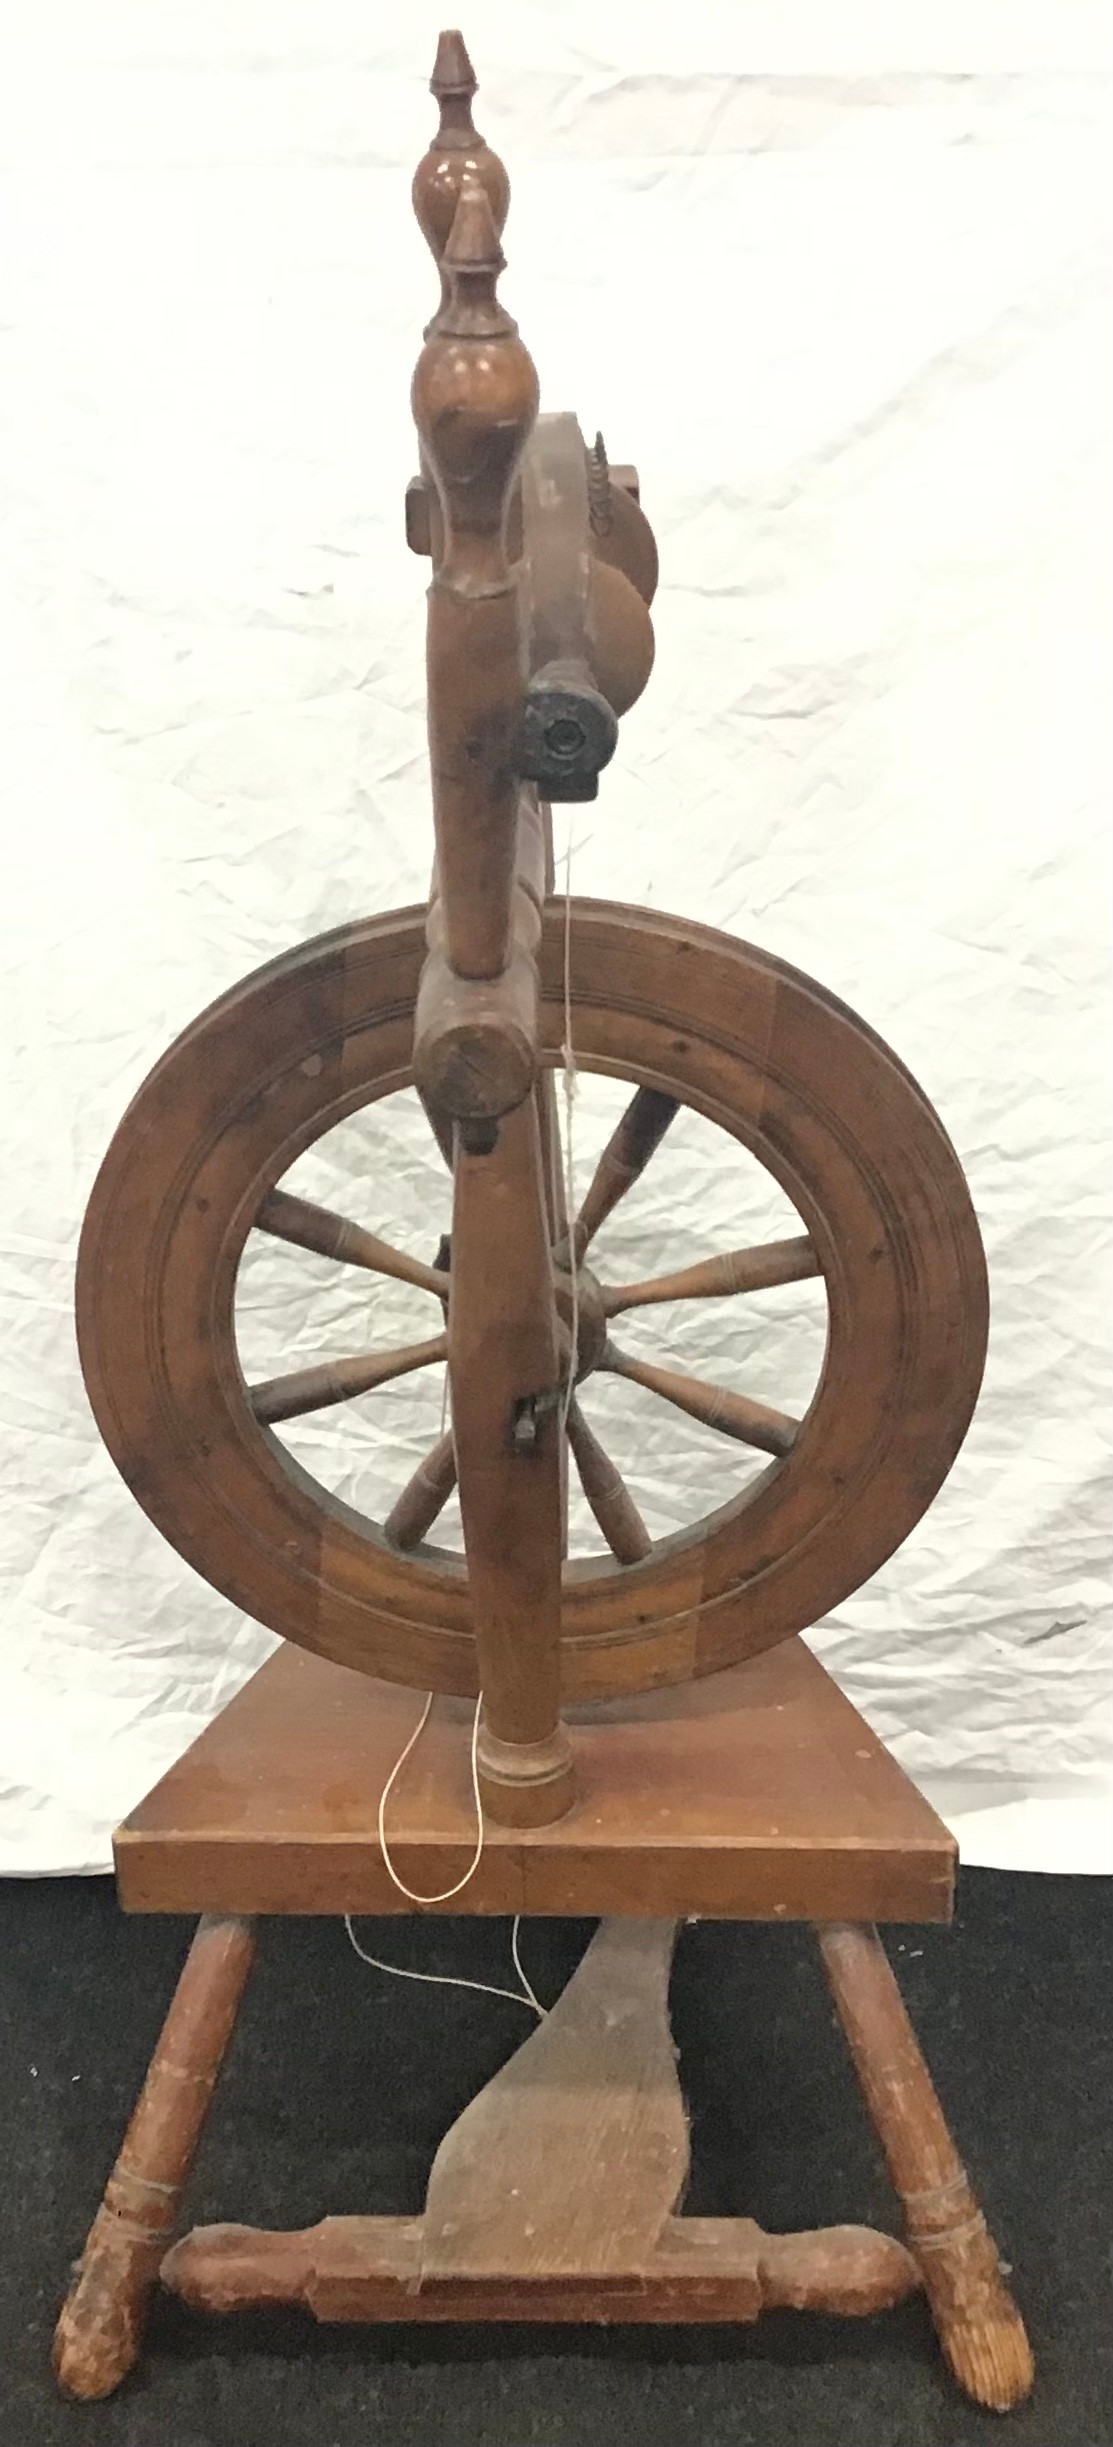 Wool spinning wheel